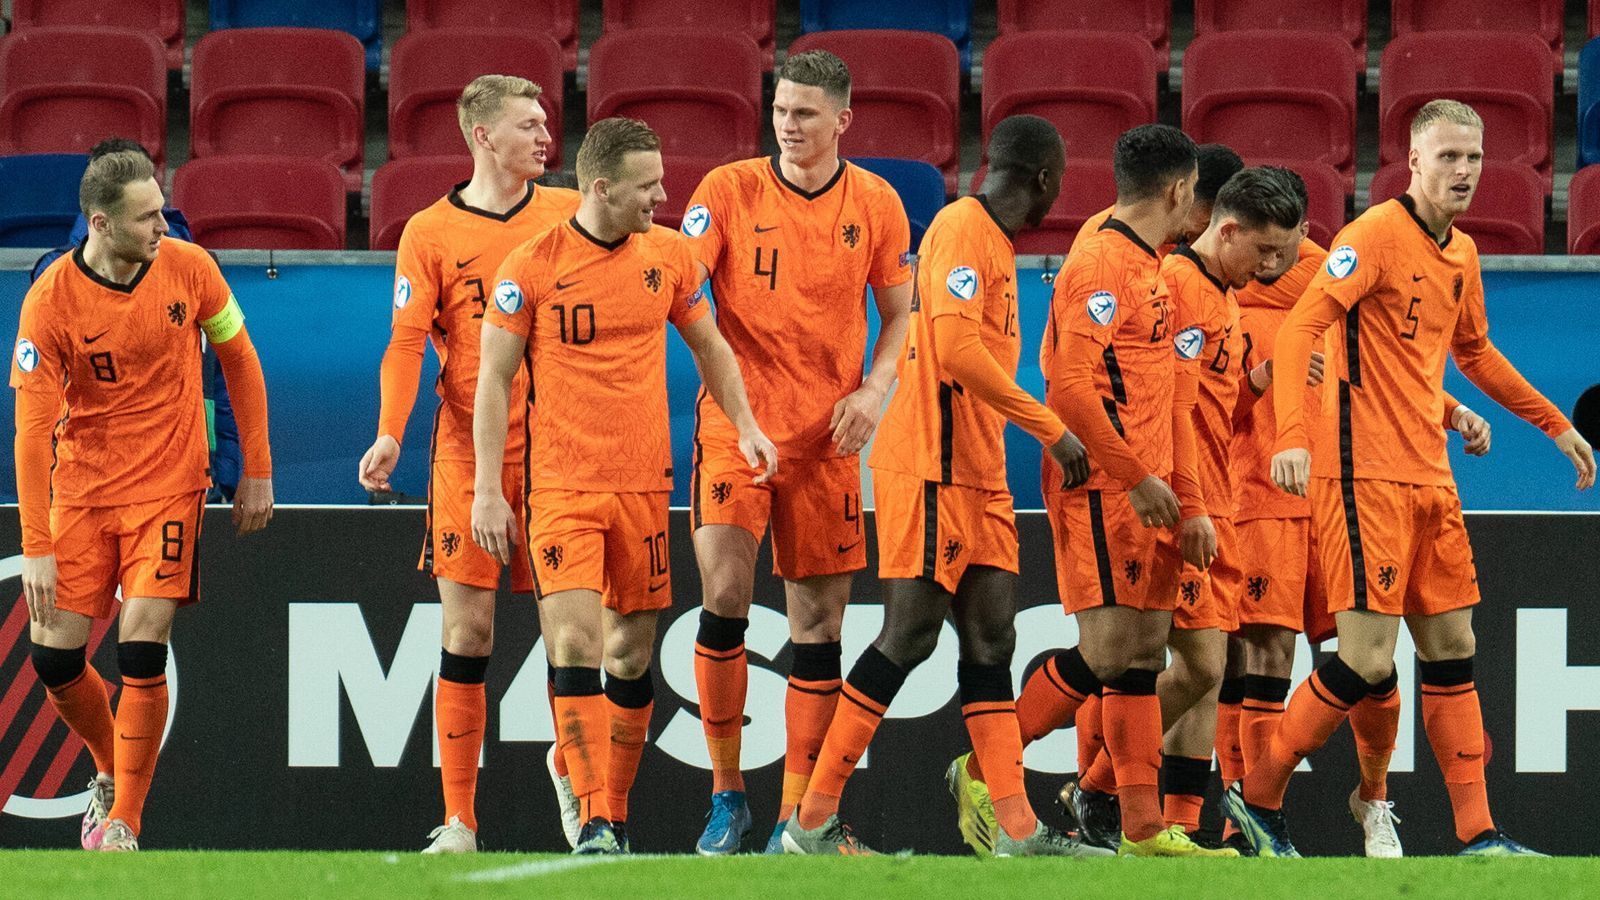 
                <strong>Niederlande </strong><br>
                Die Niederländer haben den ersten Platz der Gruppe A belegt. Die Mannschaft von Trainer Erwin van de Looi beendete die ersten beiden Gruppenspiele gegen Rumänien und Deutschland jeweils mit einem 1:1. Mit dem überragenden 6:1 im letzten Vorrundenspiel gegen Ungarn war das Ticket für das Viertelfinale dann gelöst. Das bessere Torverhältnis gegenüber Deutschland sicherte den jungen "Oranjes" Platz 1.
              